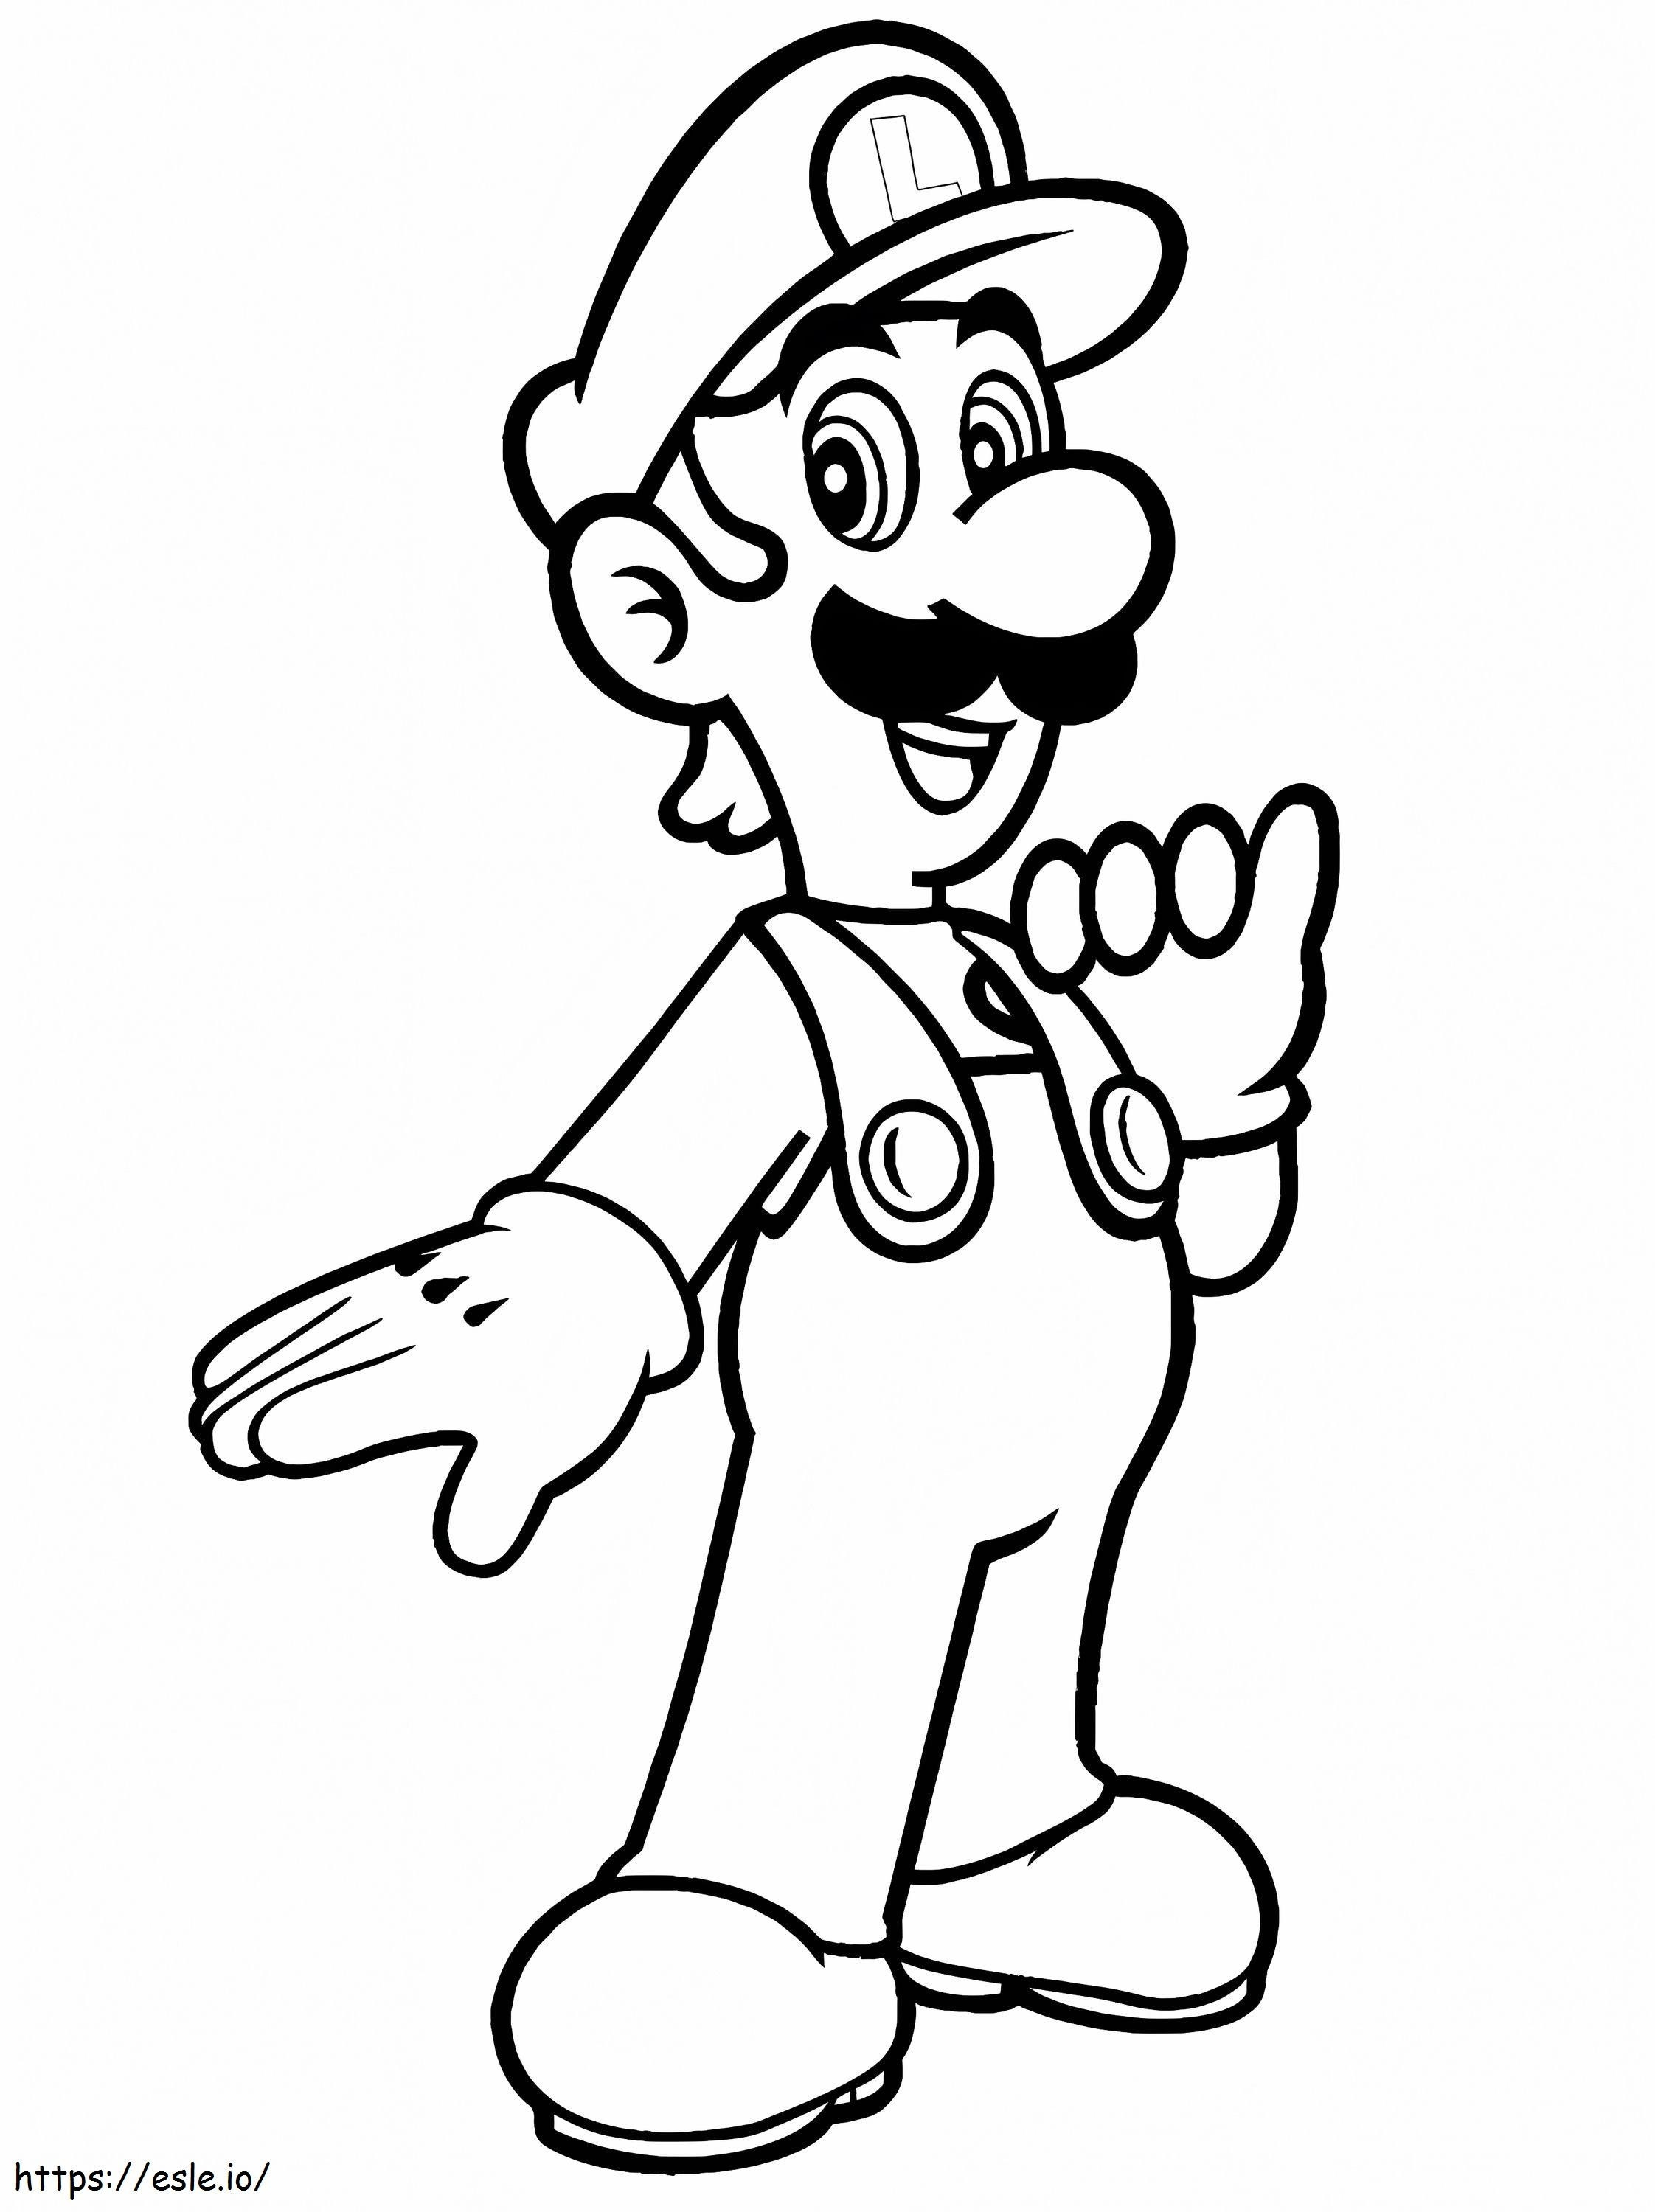 Luigi De Super Mario 1 766X1024 kolorowanka